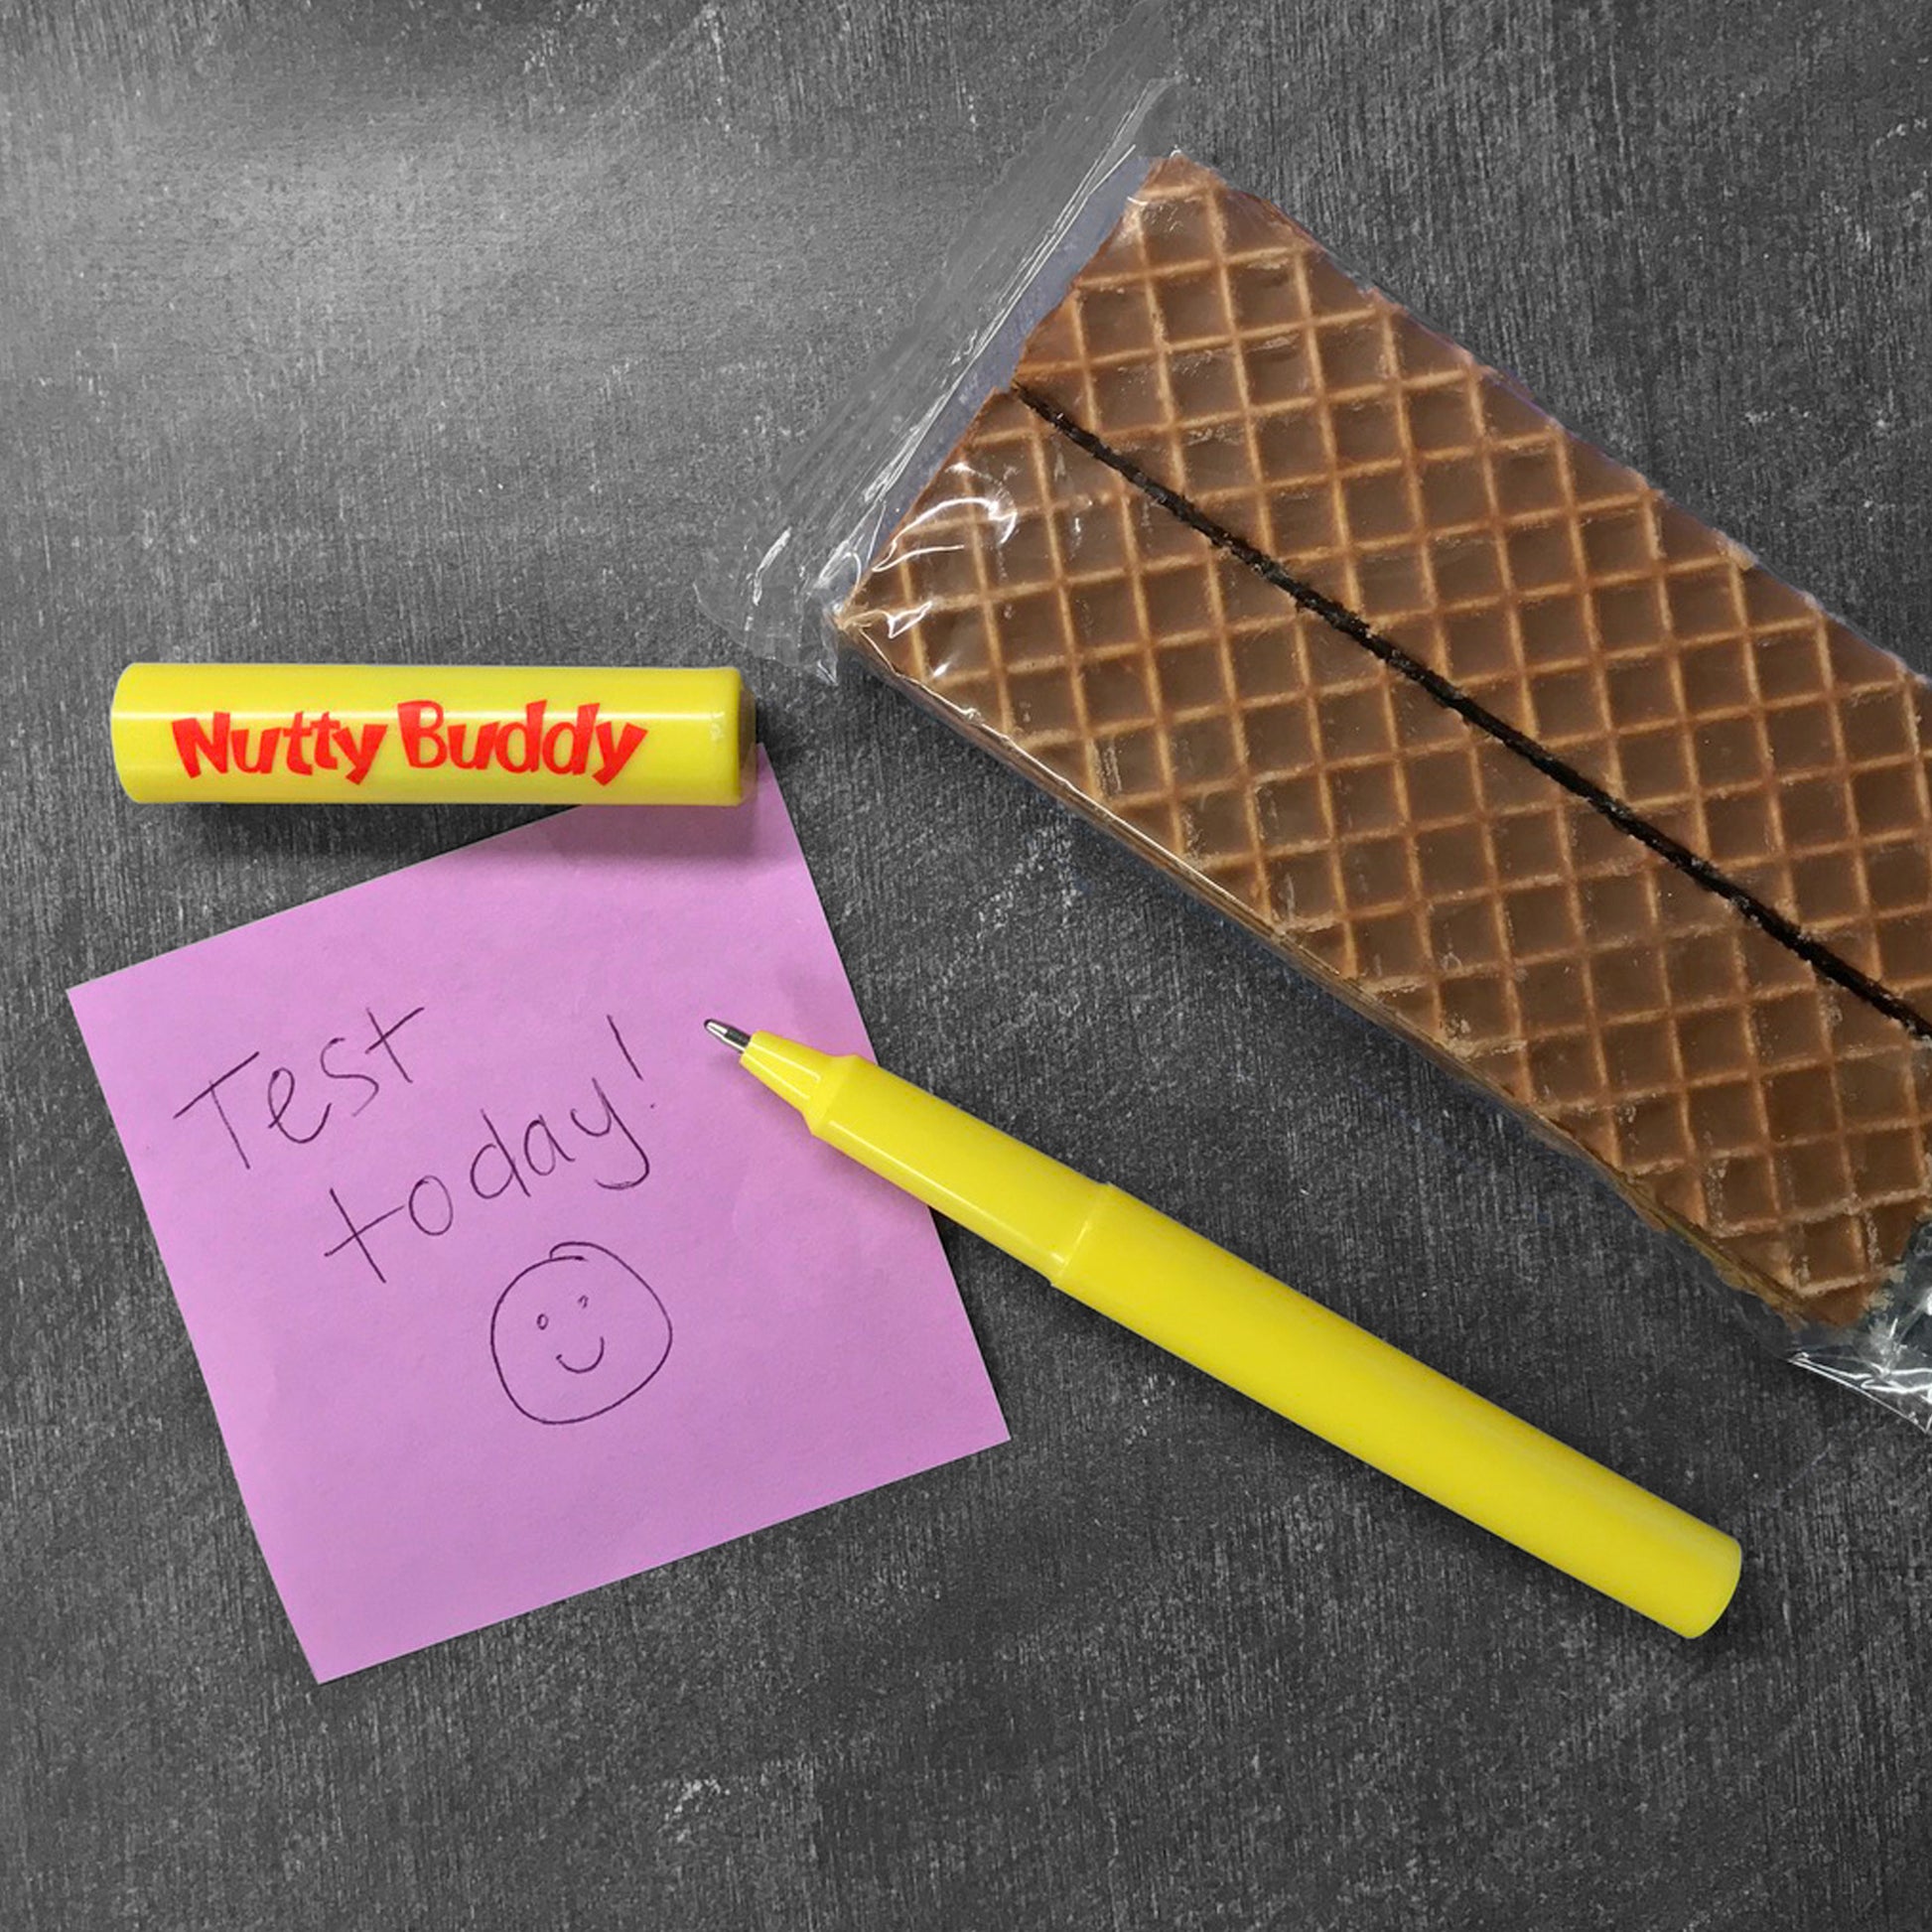 Nutty Buddy® acrylic pen next to a sticky note and a Nutty Buddy® wafer bar snack. 